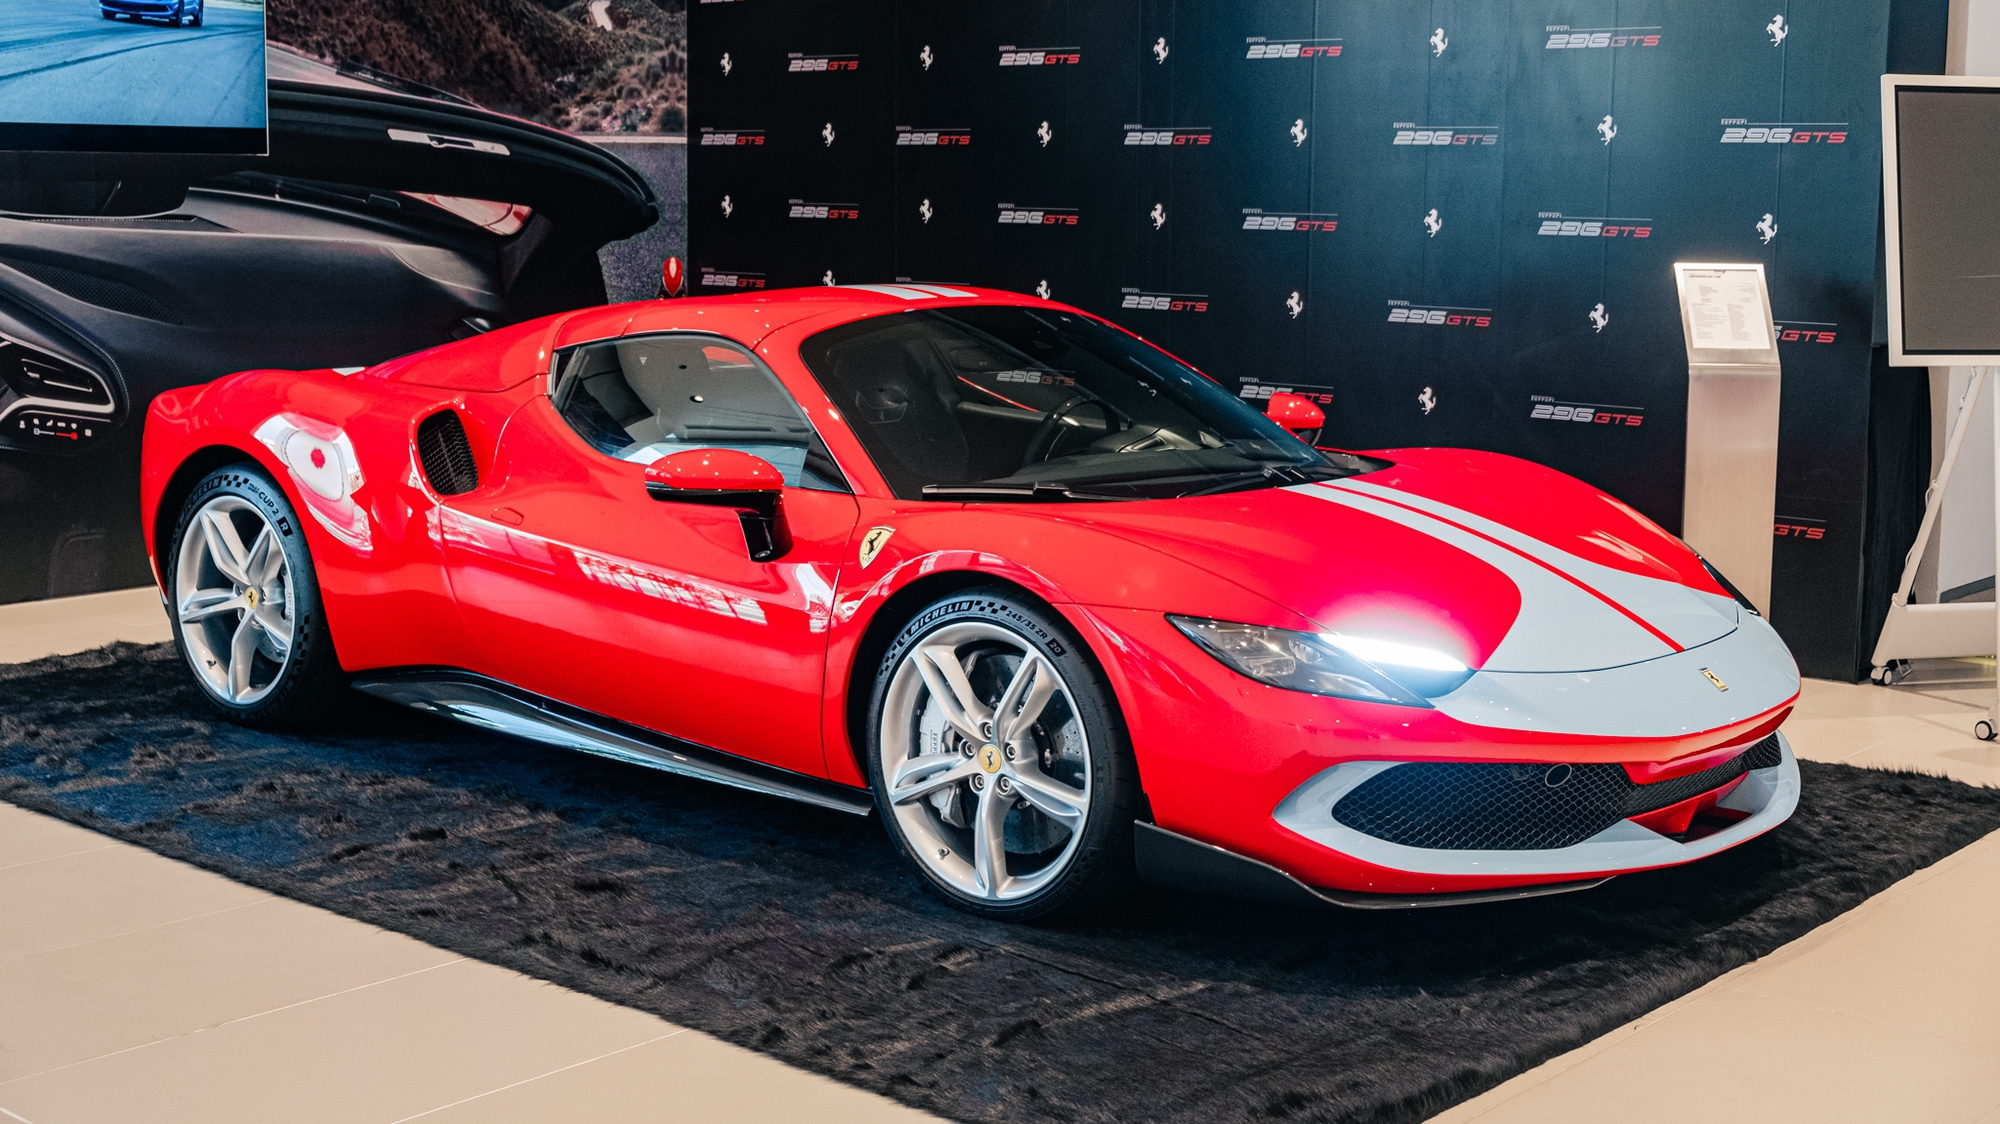 Tôi dự ra mắt kín Ferrari 296 GTS tại VN và được tiết lộ tiền đặt cọc 2,5 tỷ đồng, riêng tiền dải sơn trang trí đã đủ mua Santa Fe